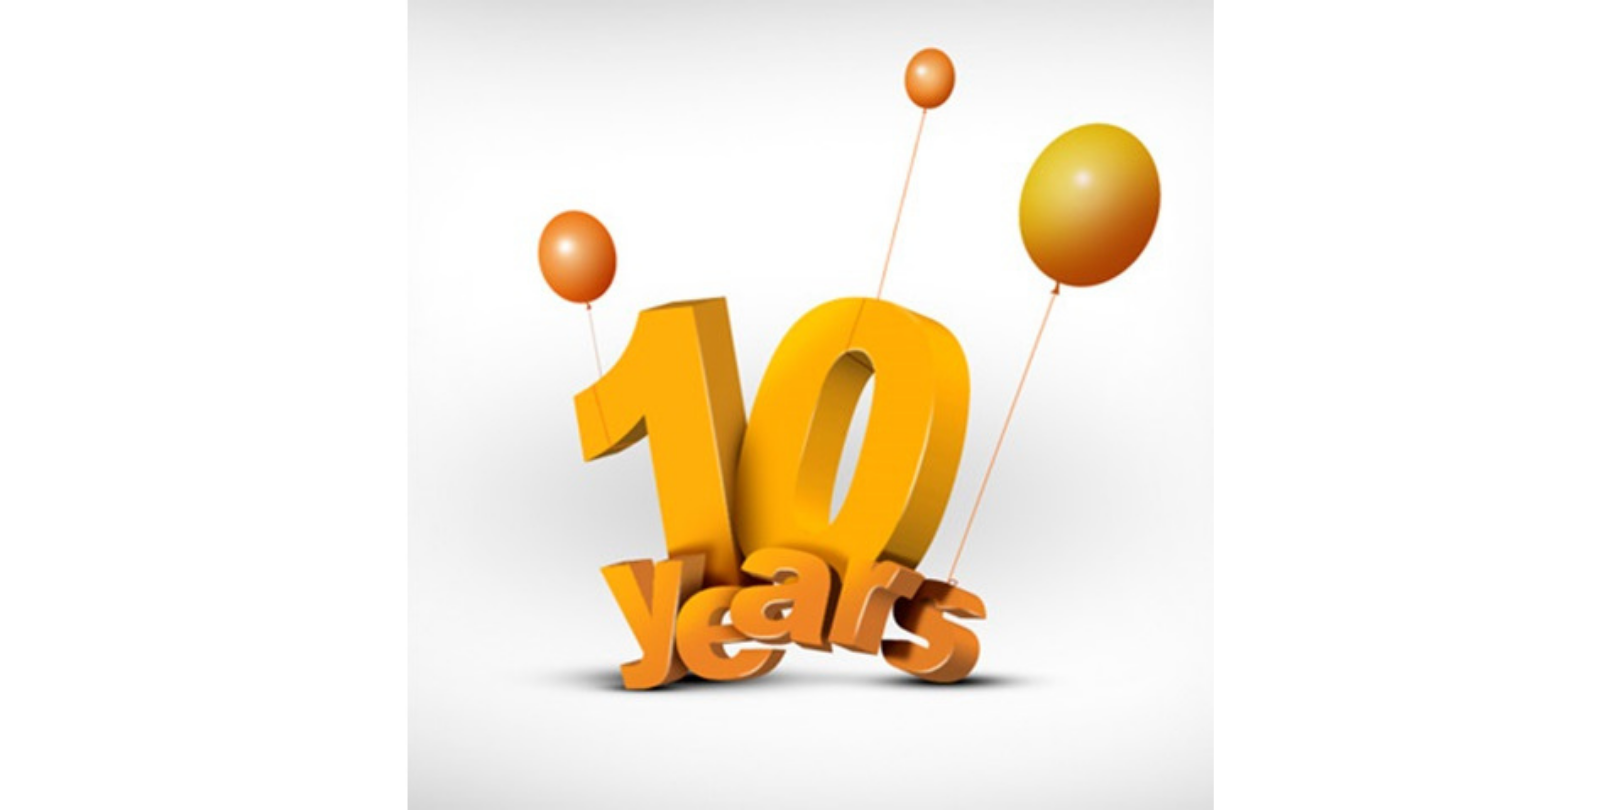 Tozer Seeds America celebrates 10 years